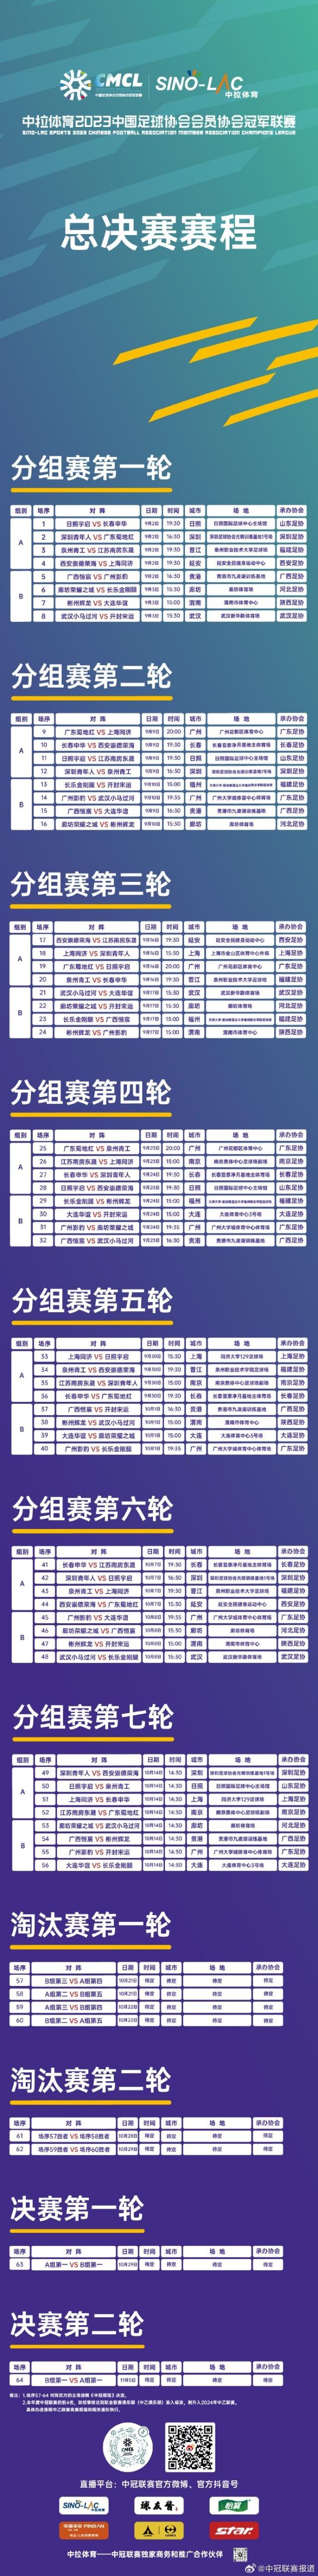 中冠公布总决赛赛程 9月2日开战(1)